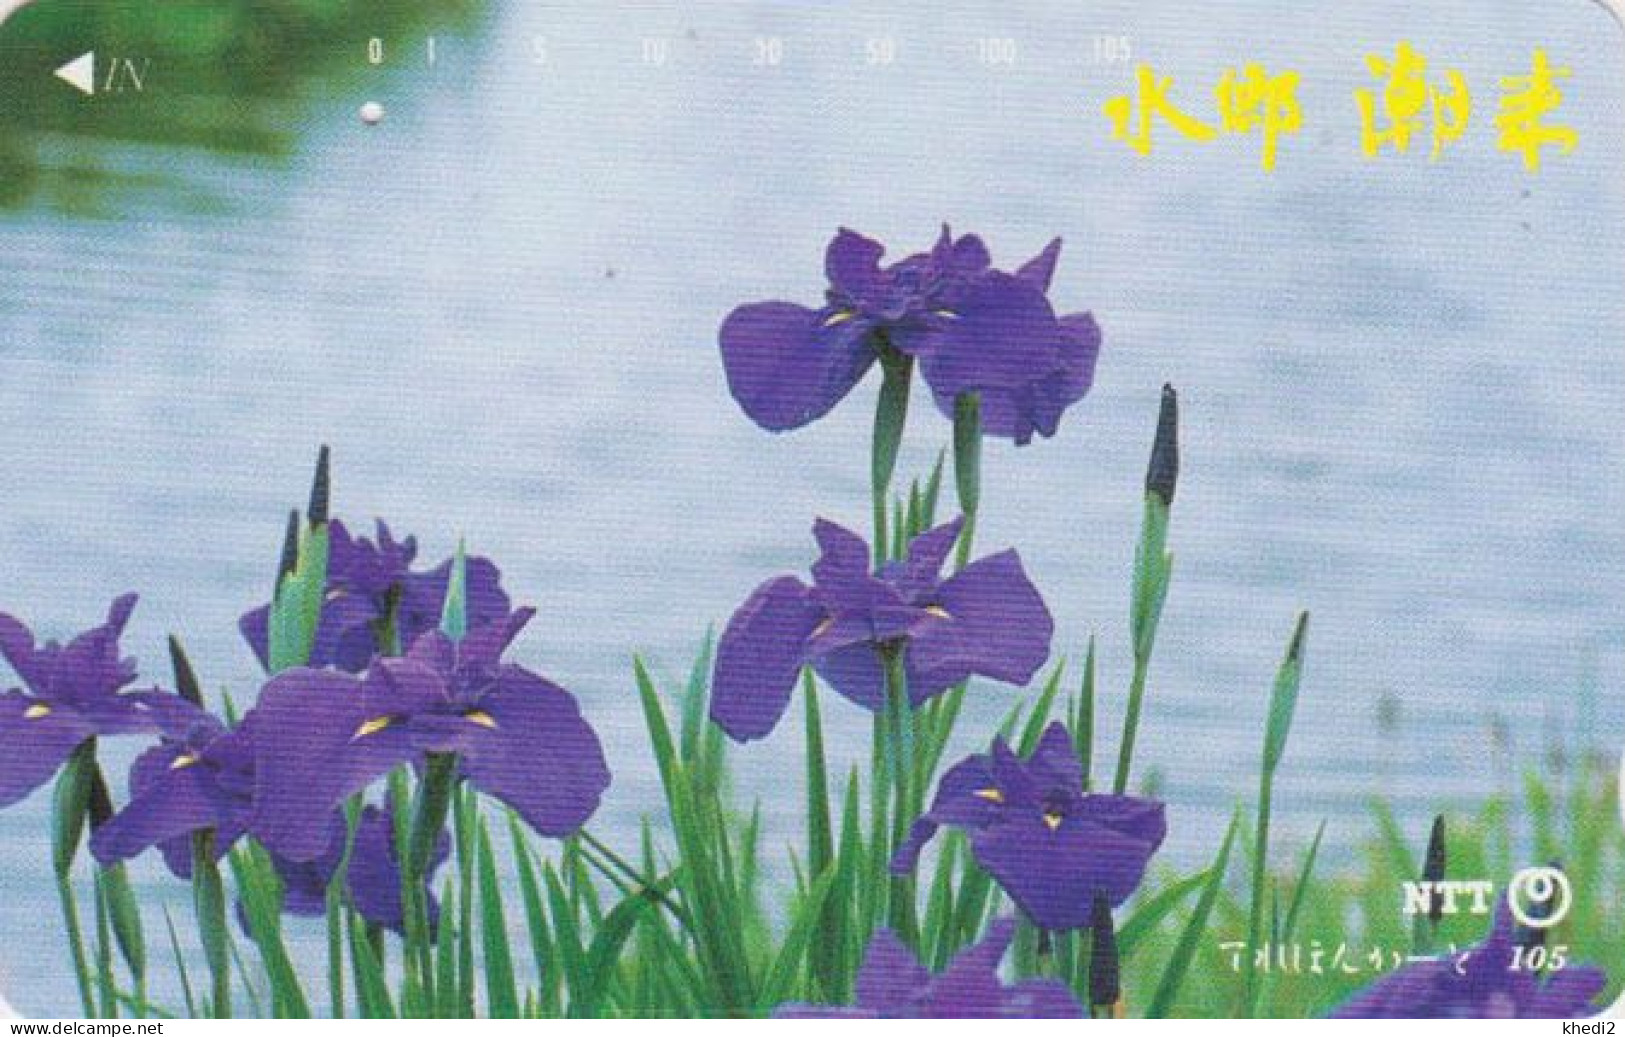 Télécarte JAPON / NTT 251-003 B ** 1 PUNCH ** - FLEUR IRIS D'EAU - FLOWER JAPAN Phonecard - Fleurs